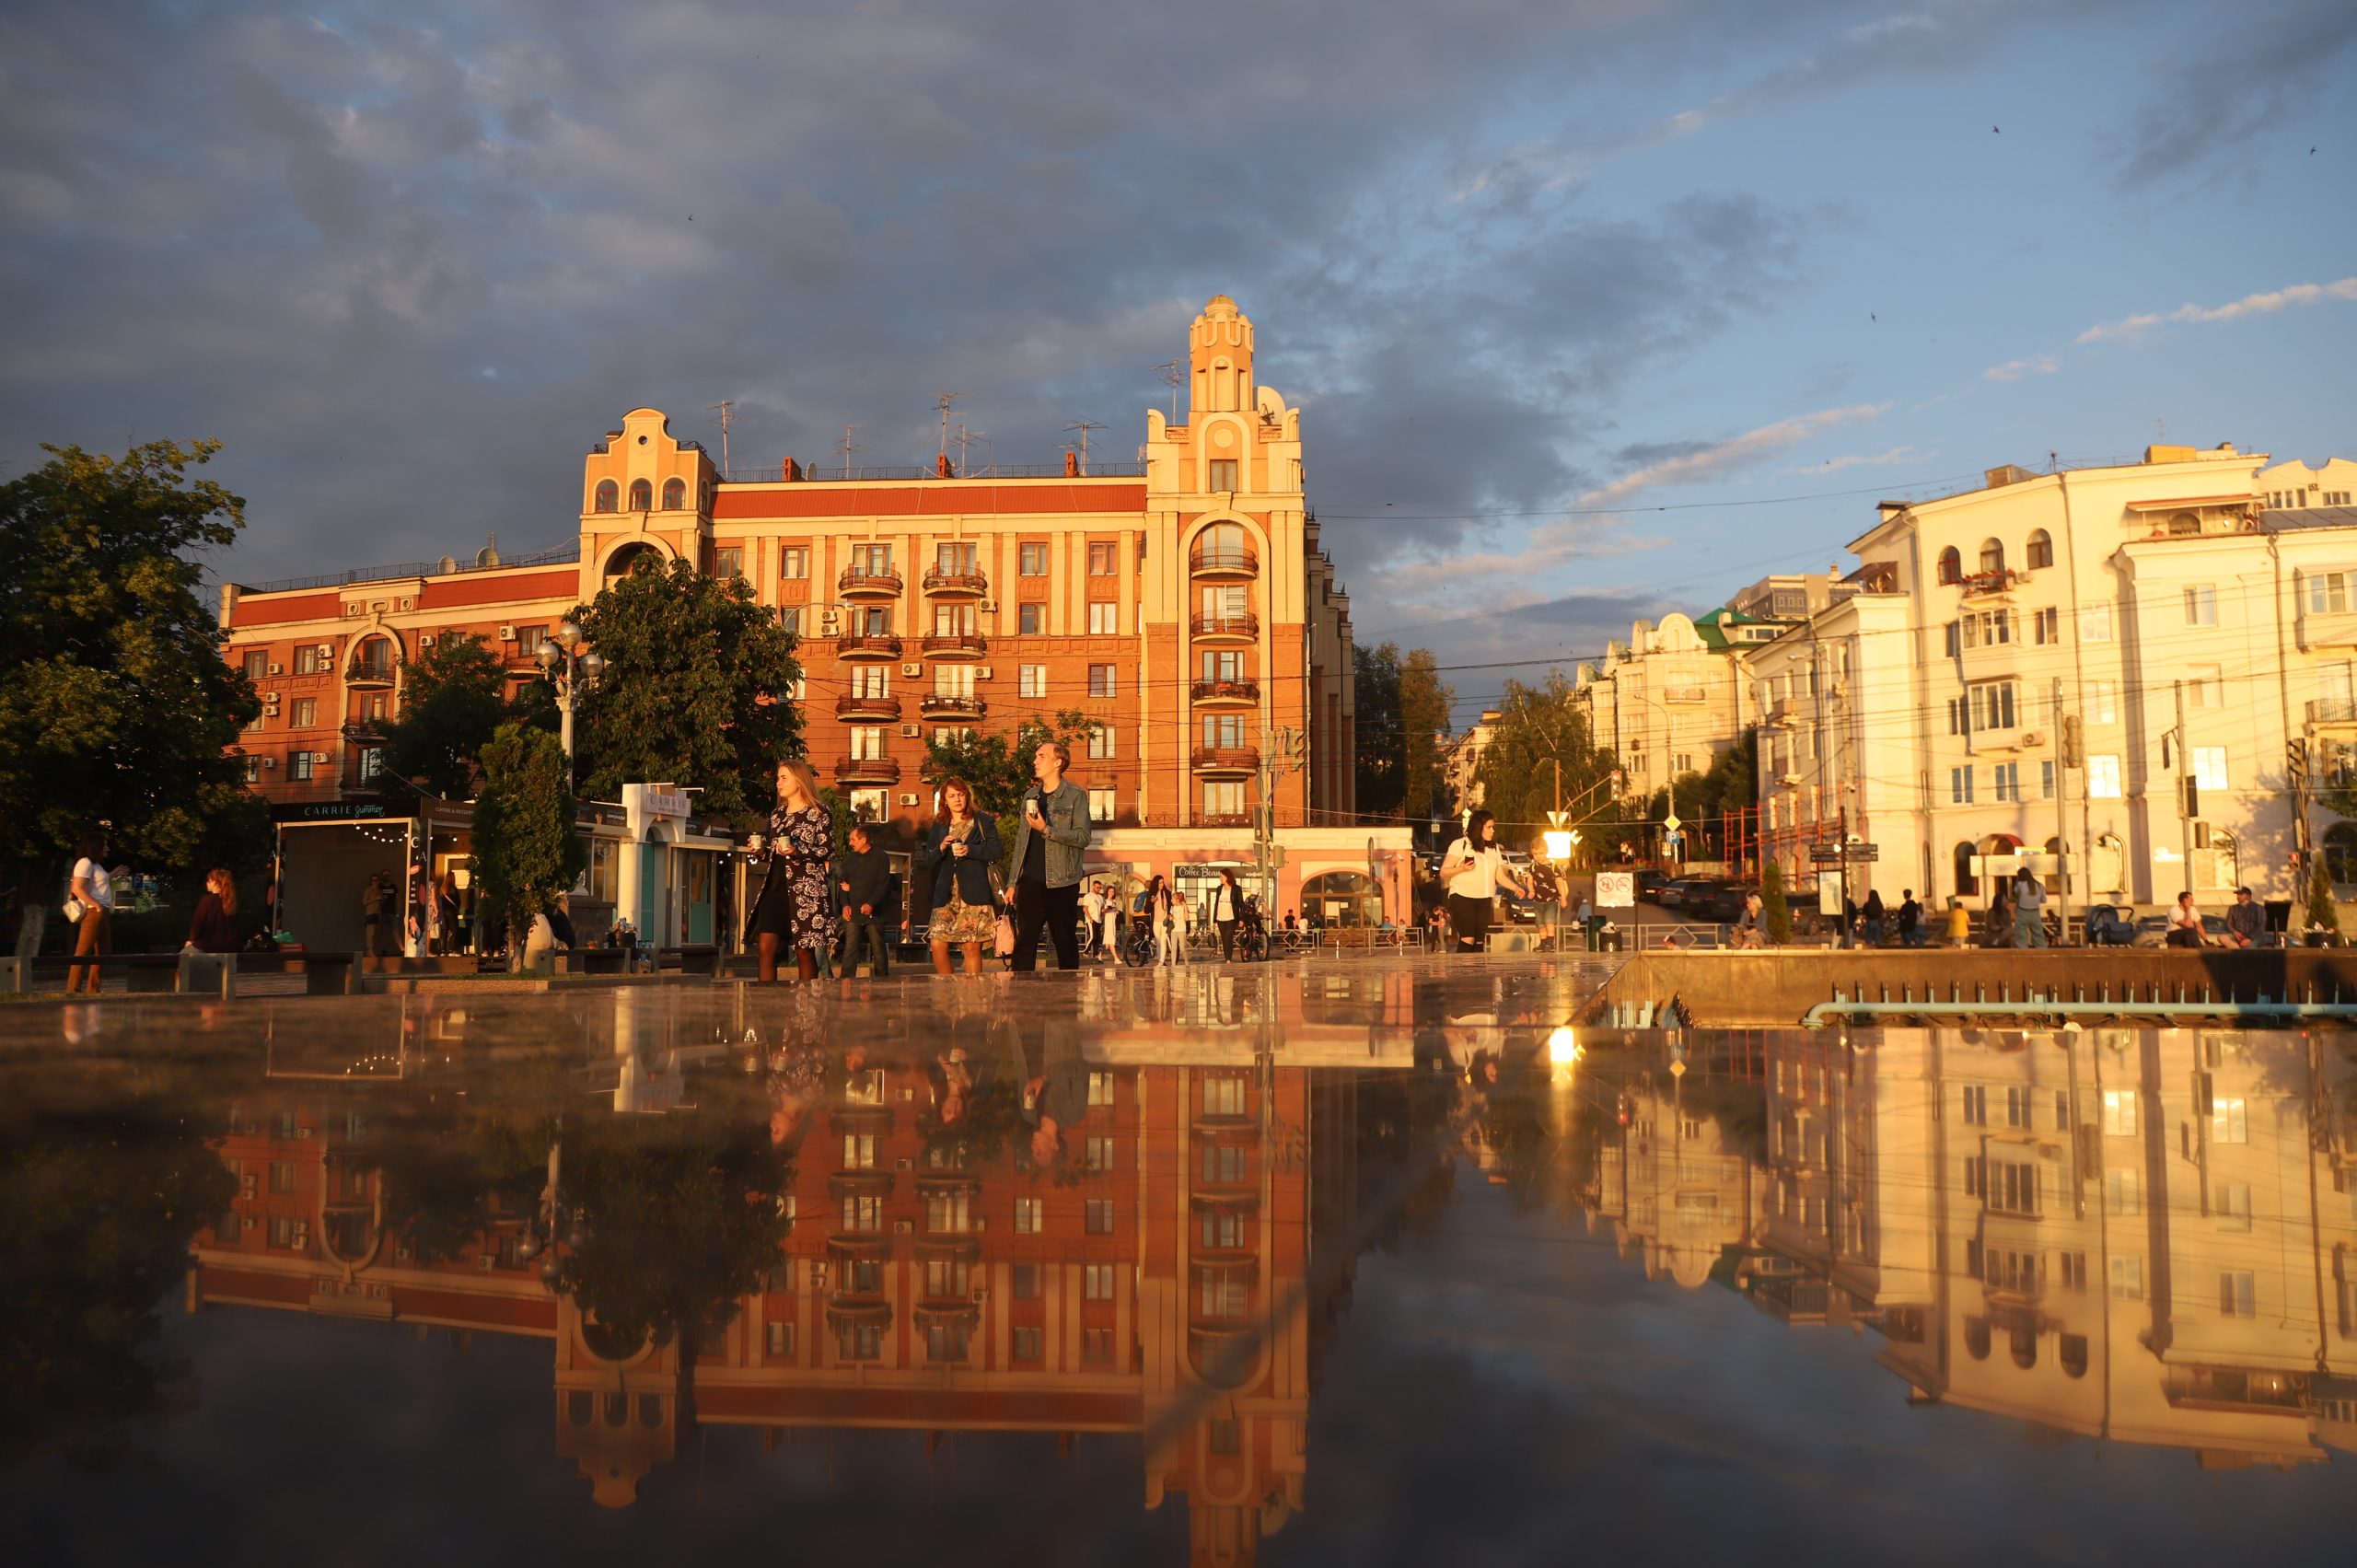 Фестиваль «Пластилиновый дождь» пройдет в Самаре в августе